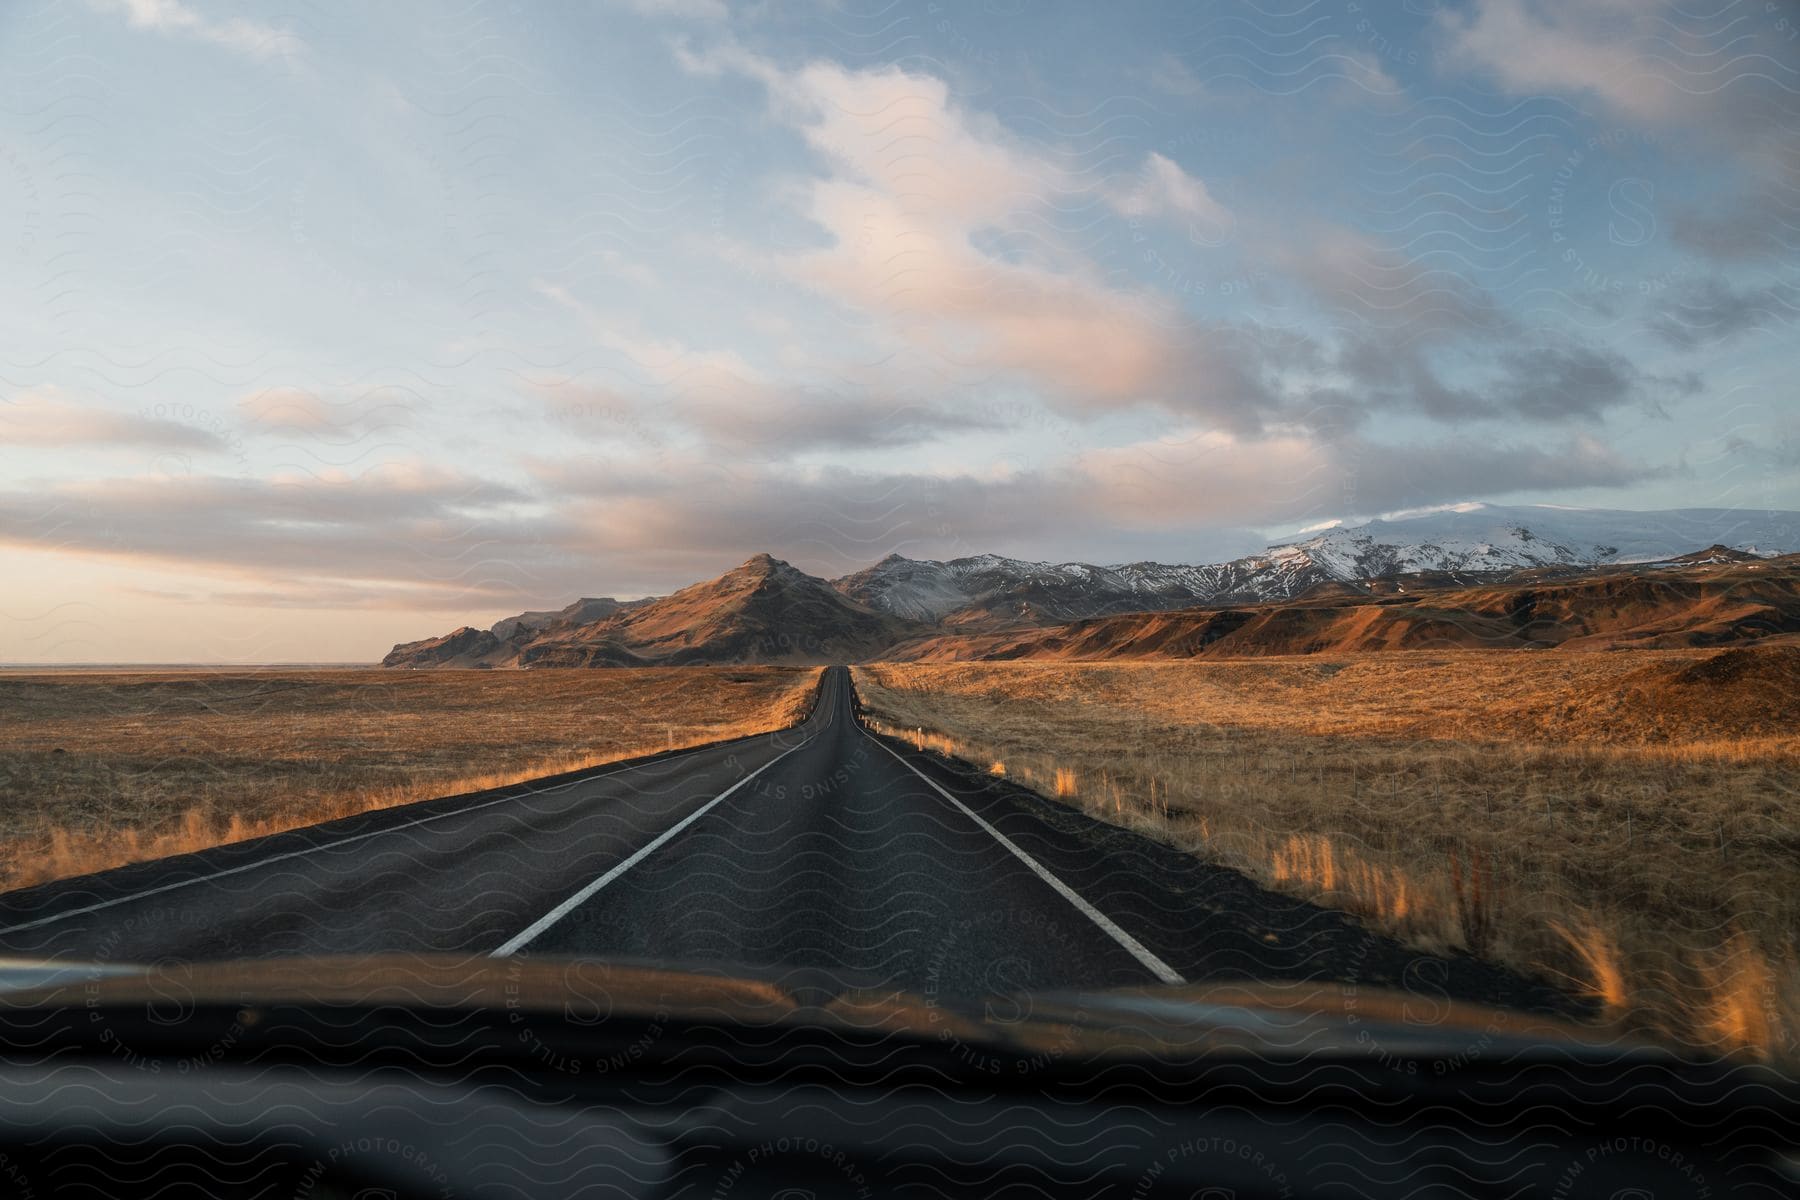 A road runs through brown grasslands towards a snowy mountain range.